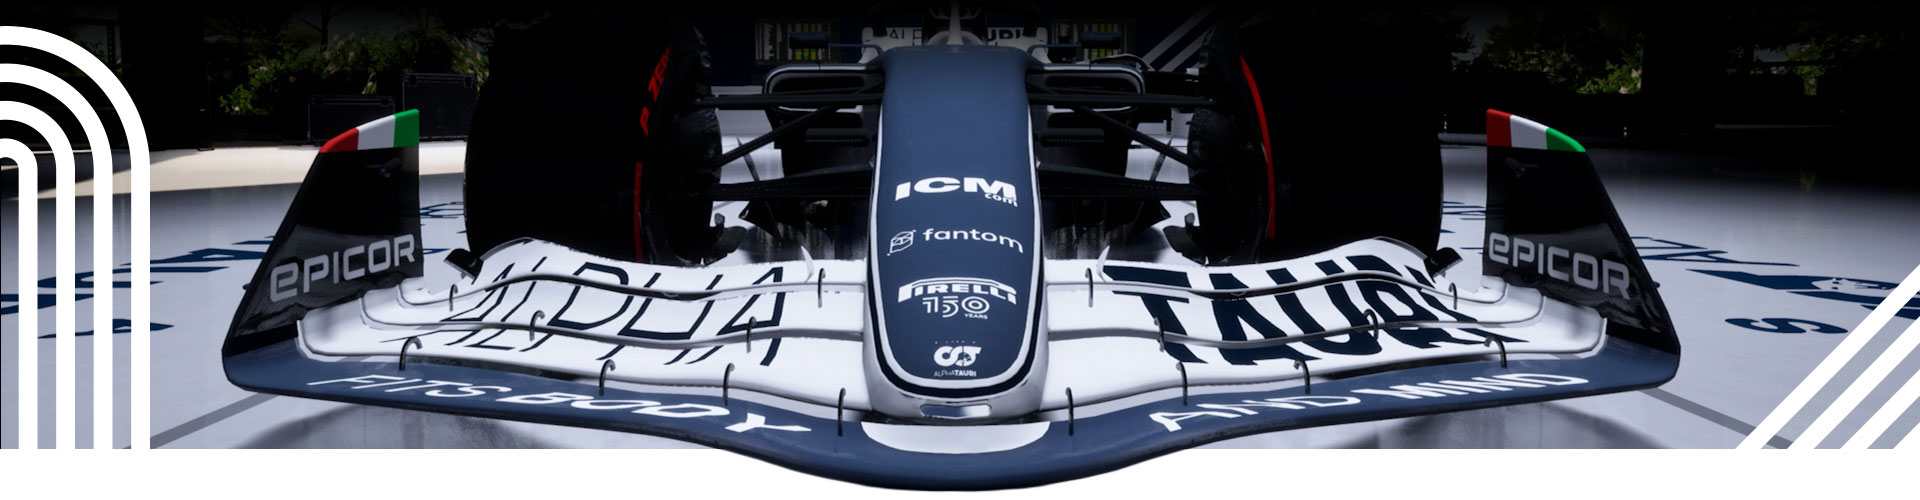 Un motif à rayures de course superposé sur un véhicule de F1 arrêté.